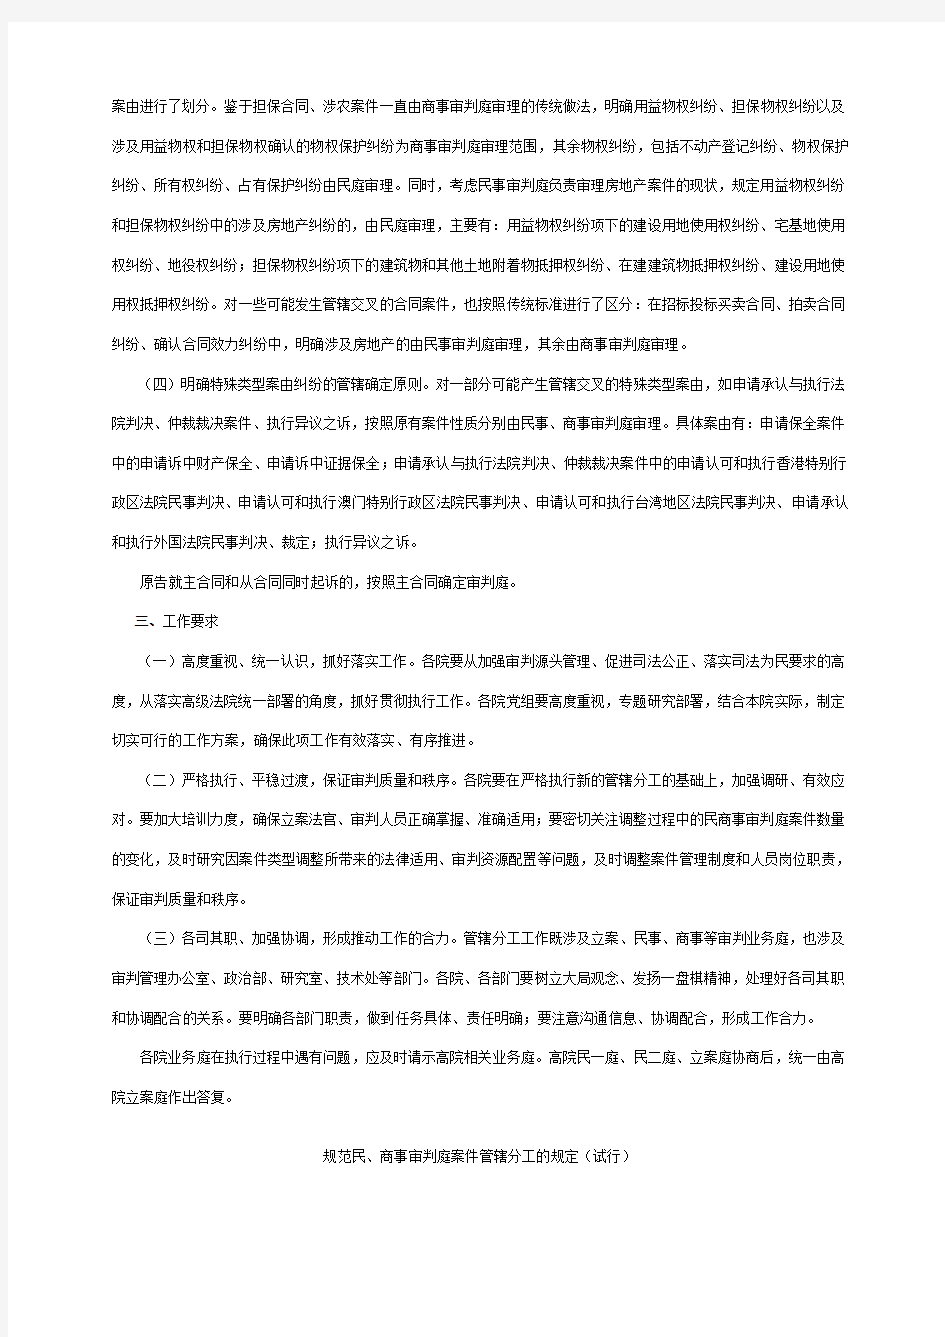 北京市高级人民法院关于贯彻执行《规范民、商事审判庭案件管辖分工的规定(试行)》的通知